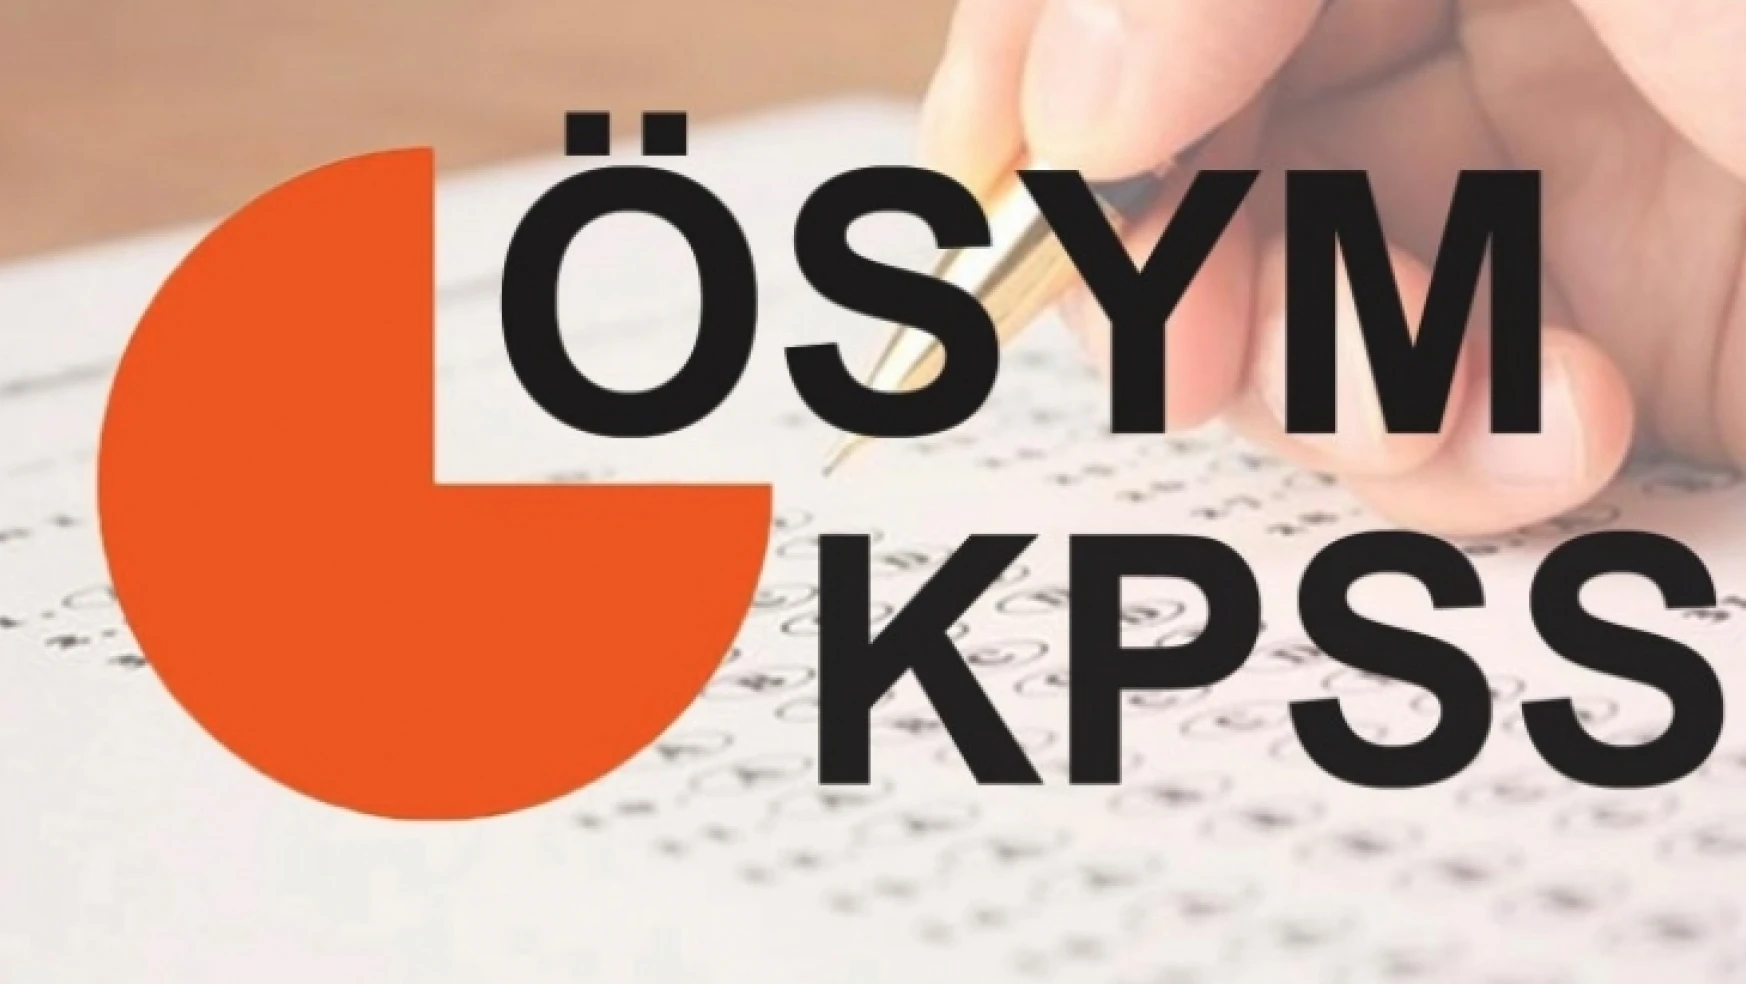 2018 (ÖSYM) KPSS yerleştirme tarihleri ve sınav takvimi açıklandı!